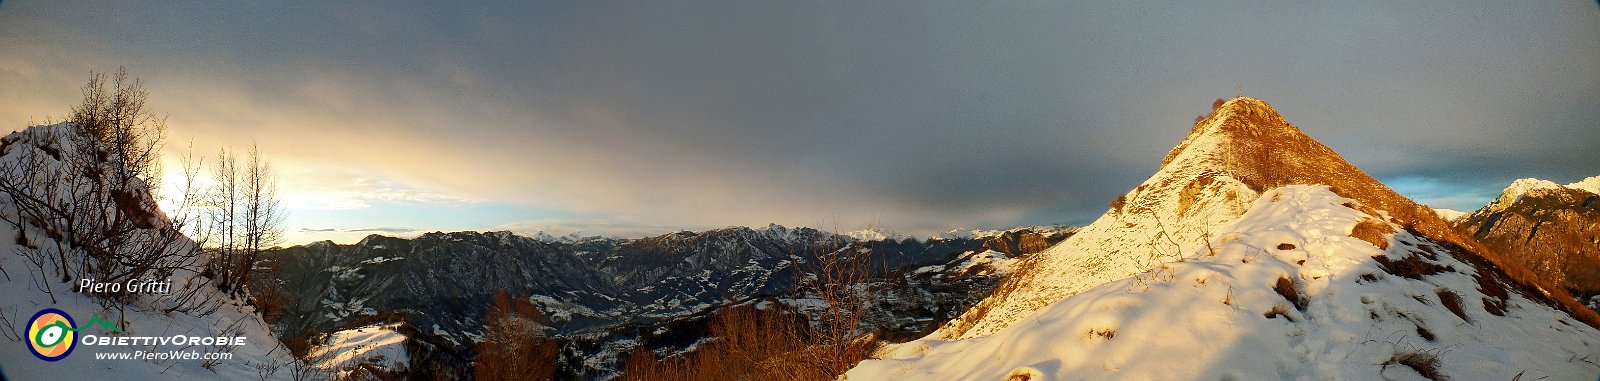 30 Panoramica verso il Monte Gioco e la Valle Brembana.jpg